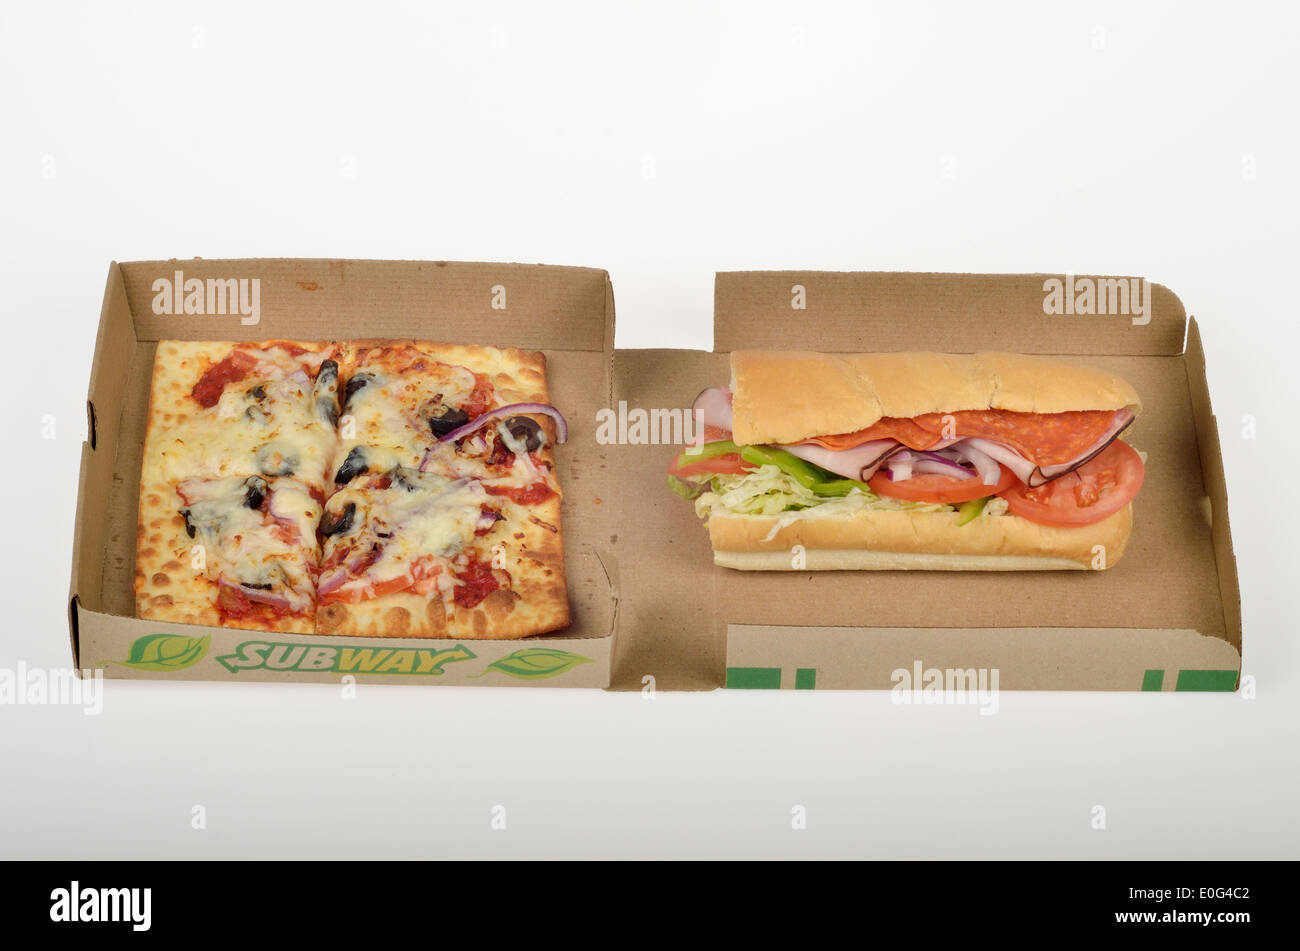 U-Bahn Flatizza Veggie Gemüse quadratische Pizzastück & italienischen BMT Sub in Box-Verpackung auf weißem Hintergrund Ausschnitt USA Stockfoto